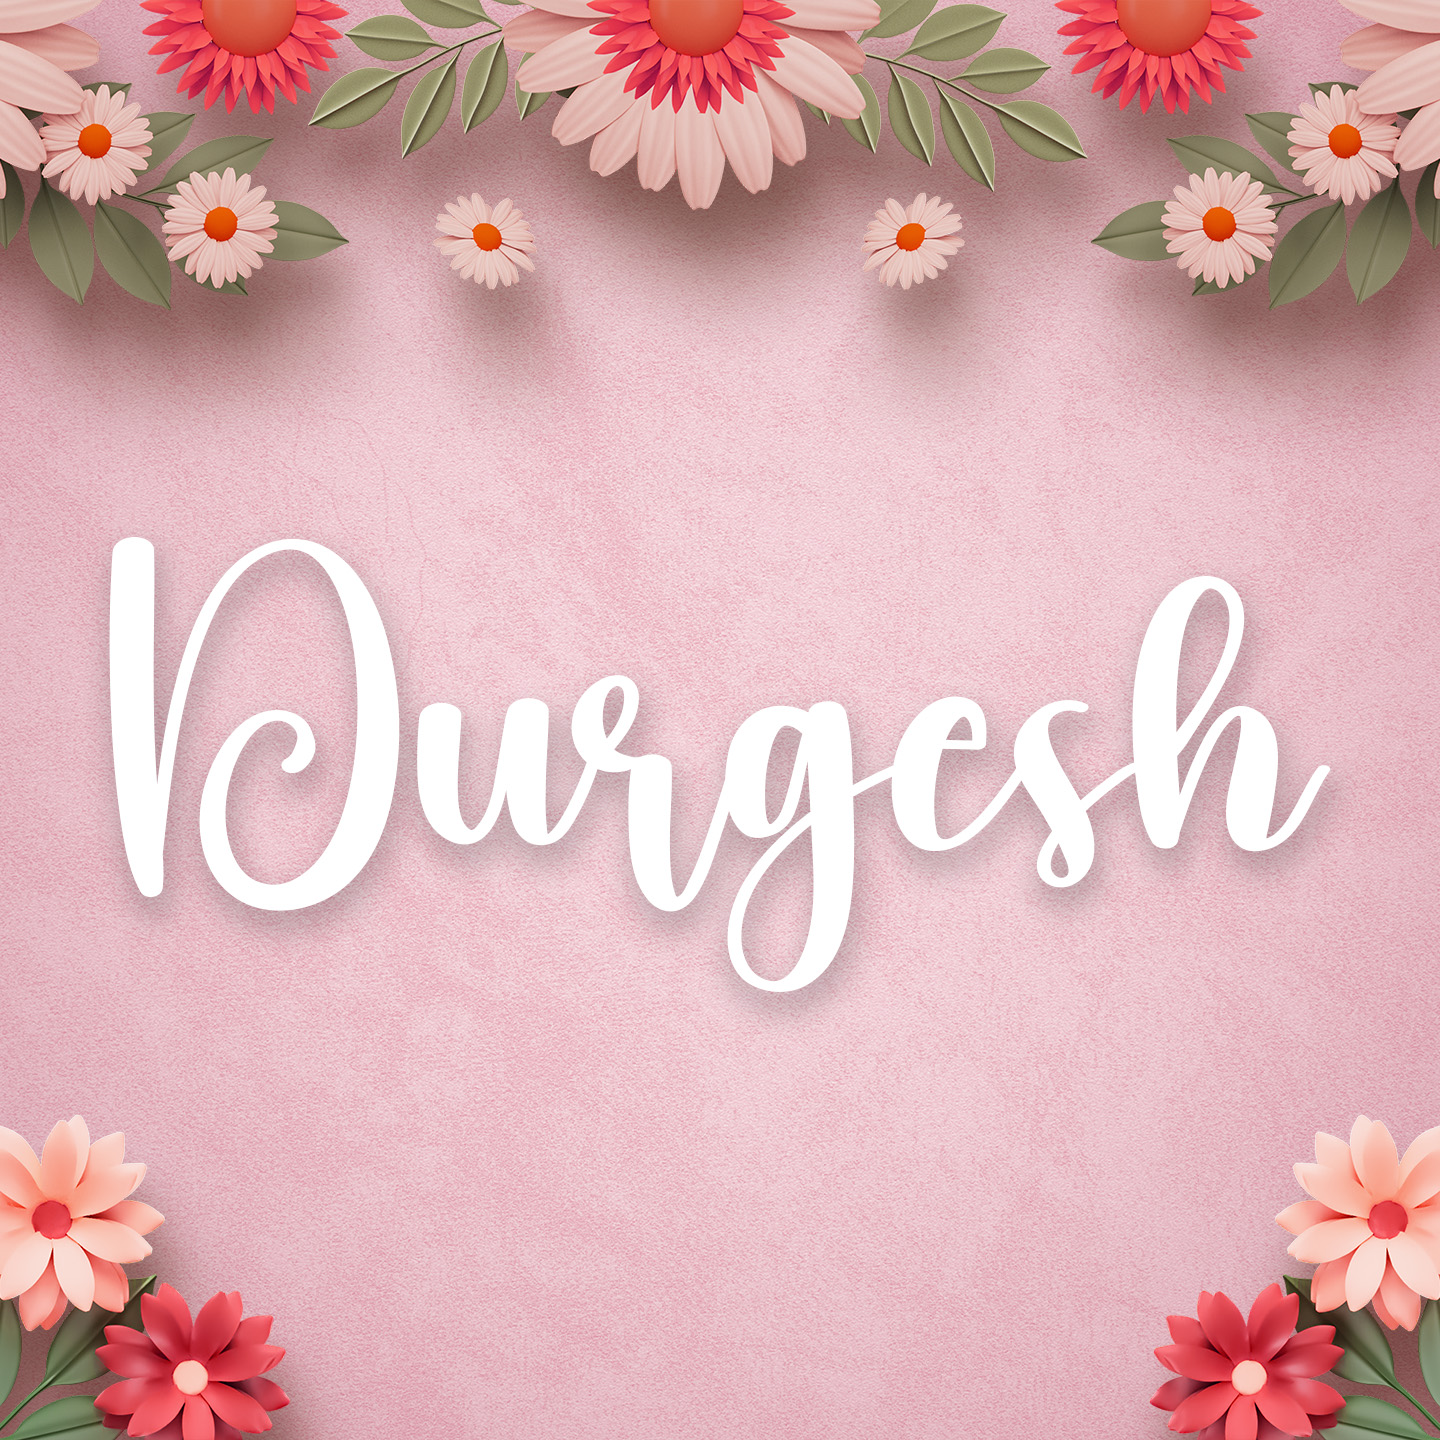 Durgesh: Meaning, Origin, Pronunciation & Popularity